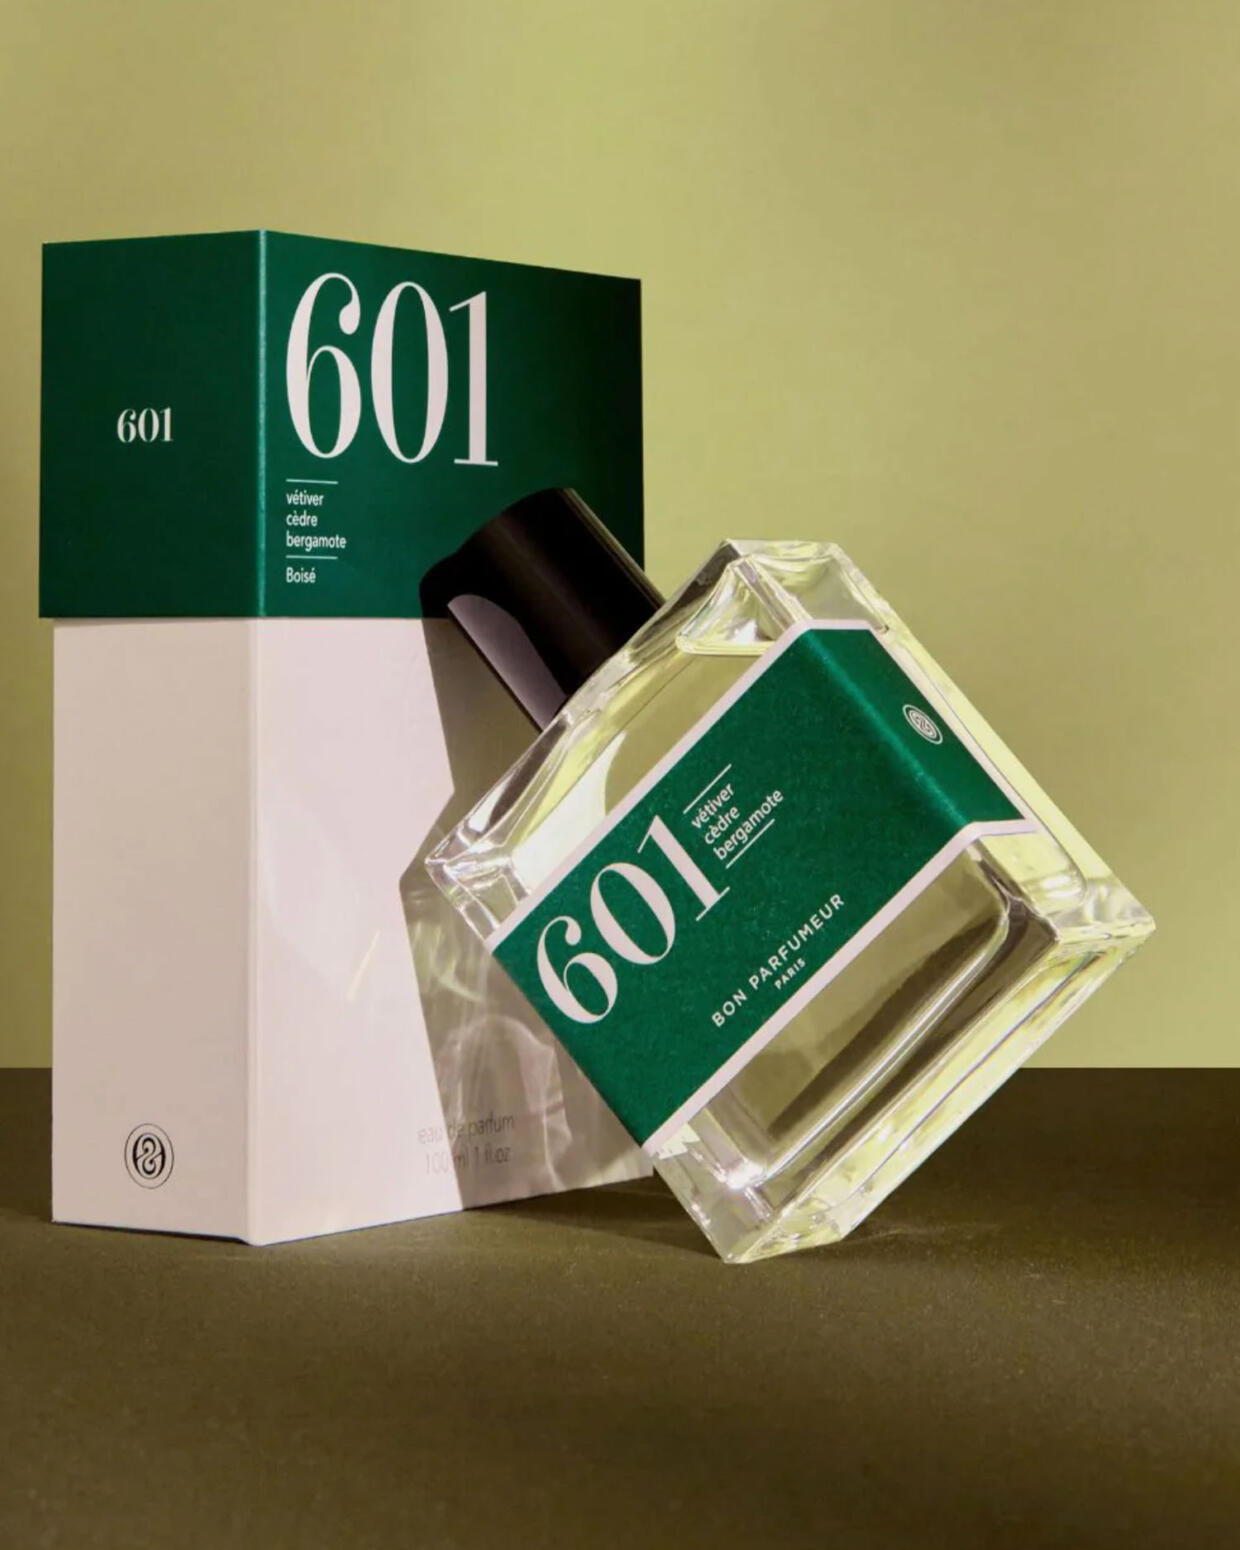 Bon Parfumeur 601 - 30 ML